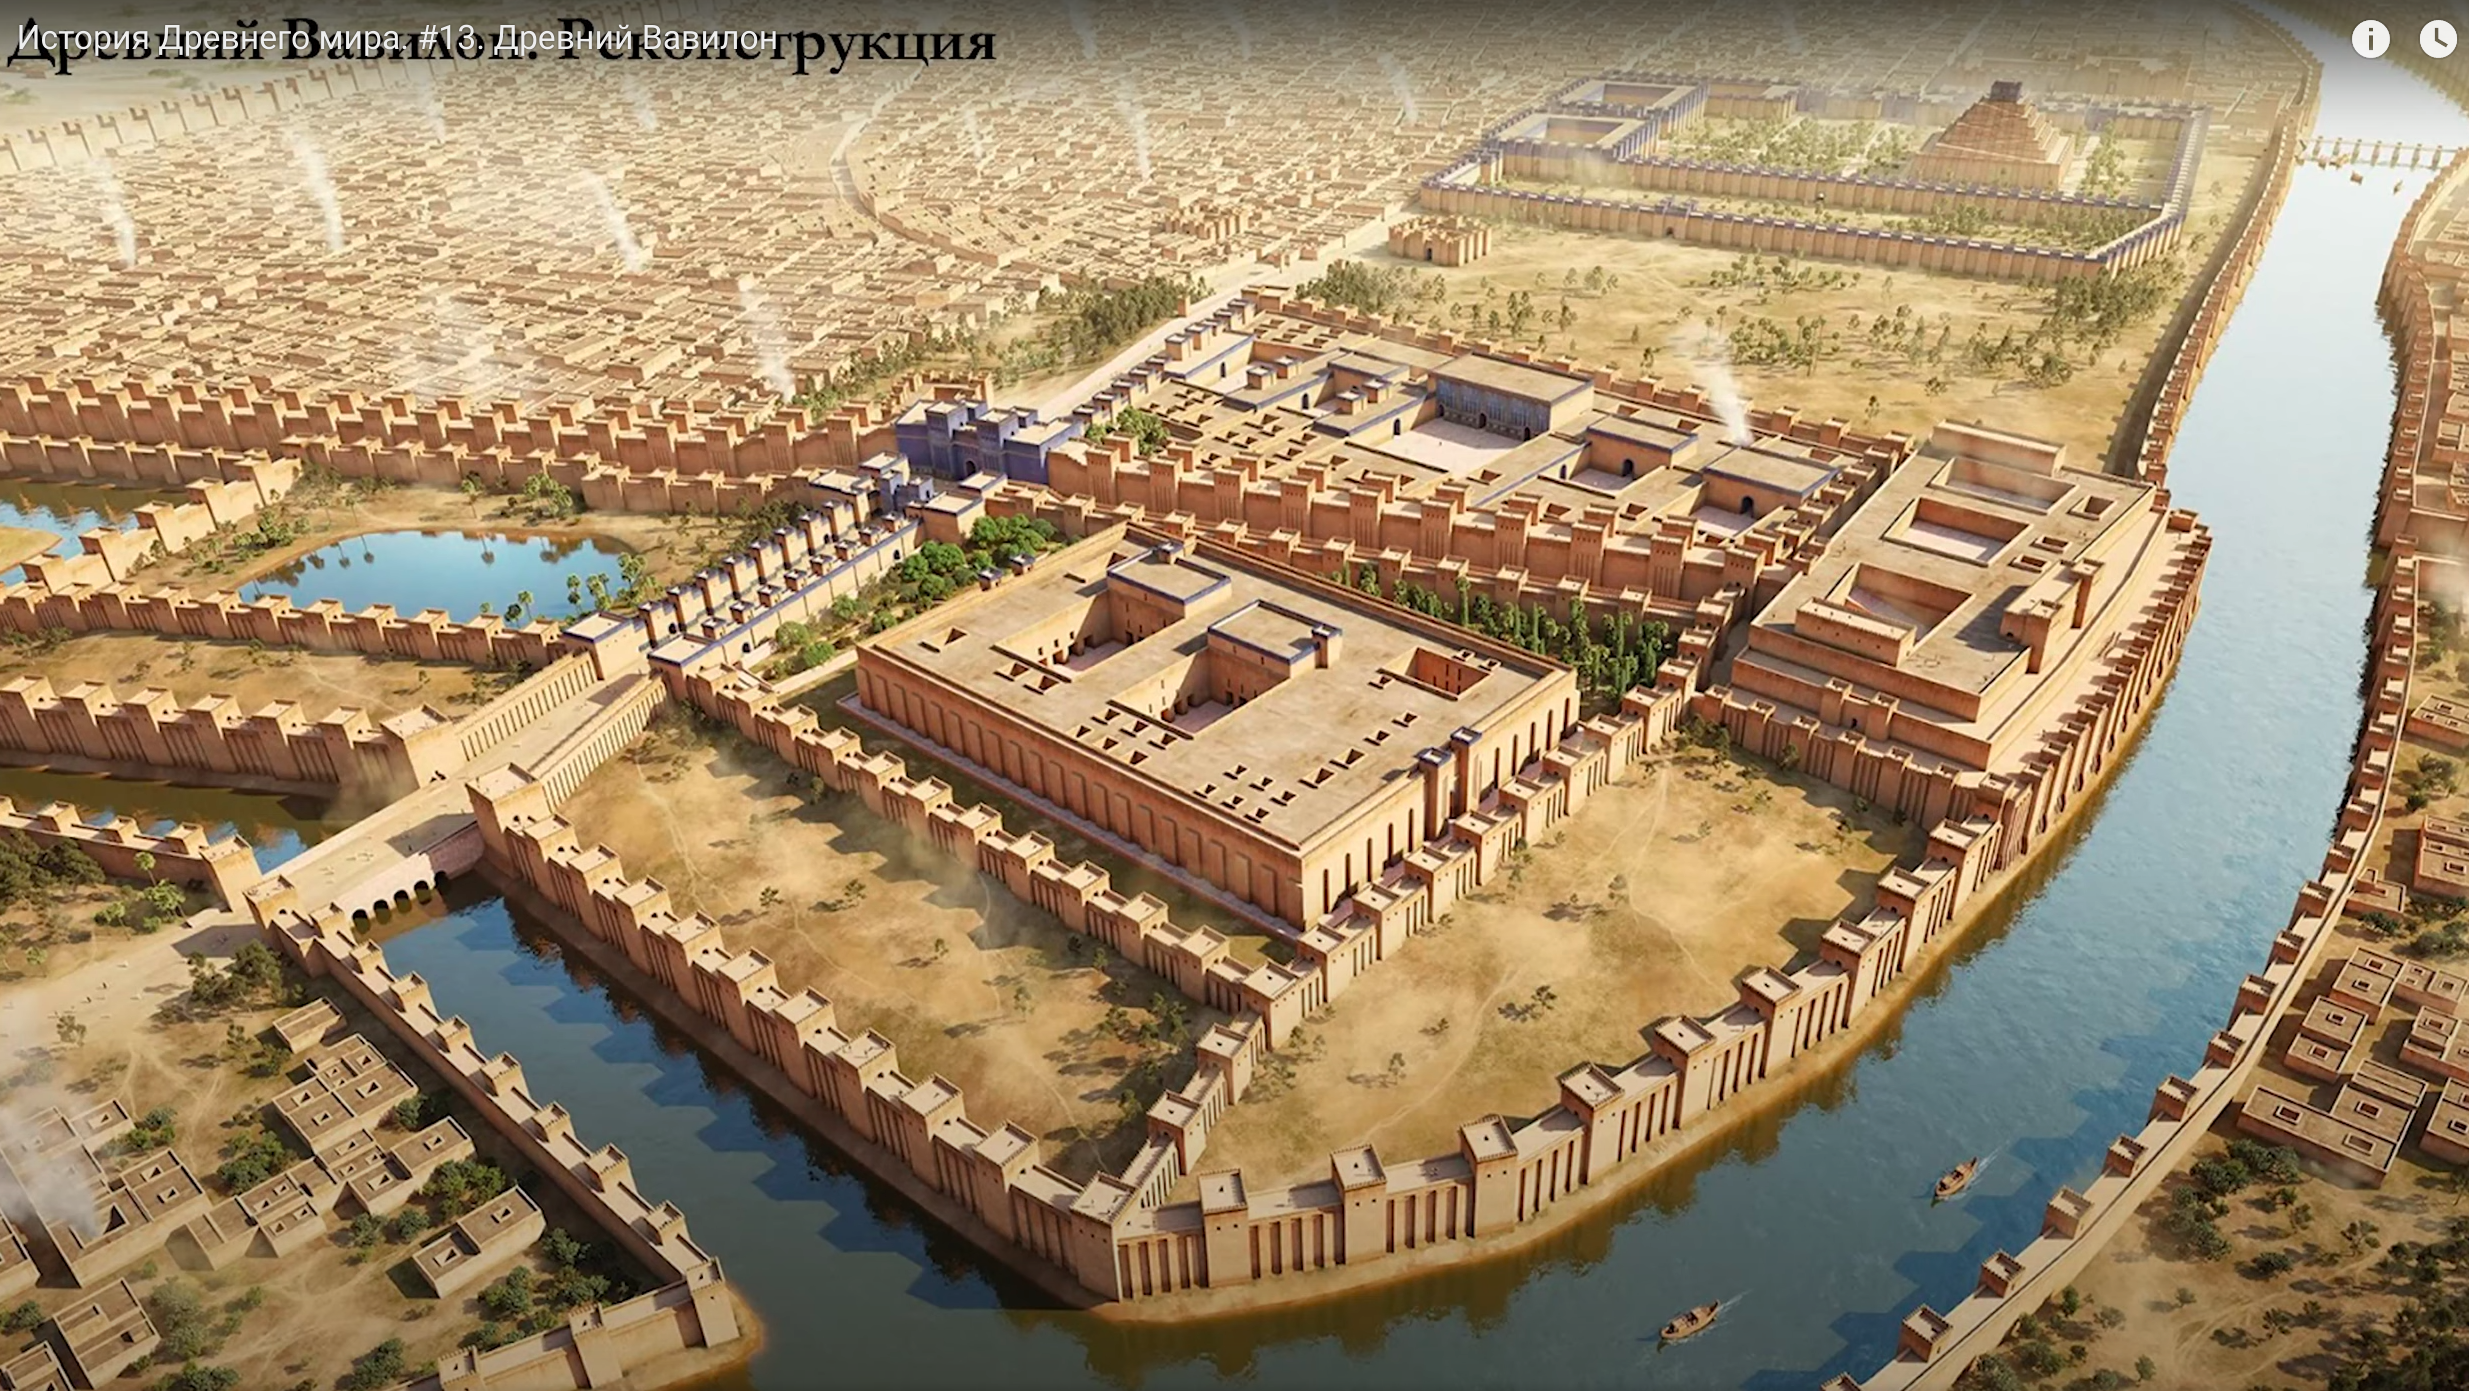 Государства древней месопотамии